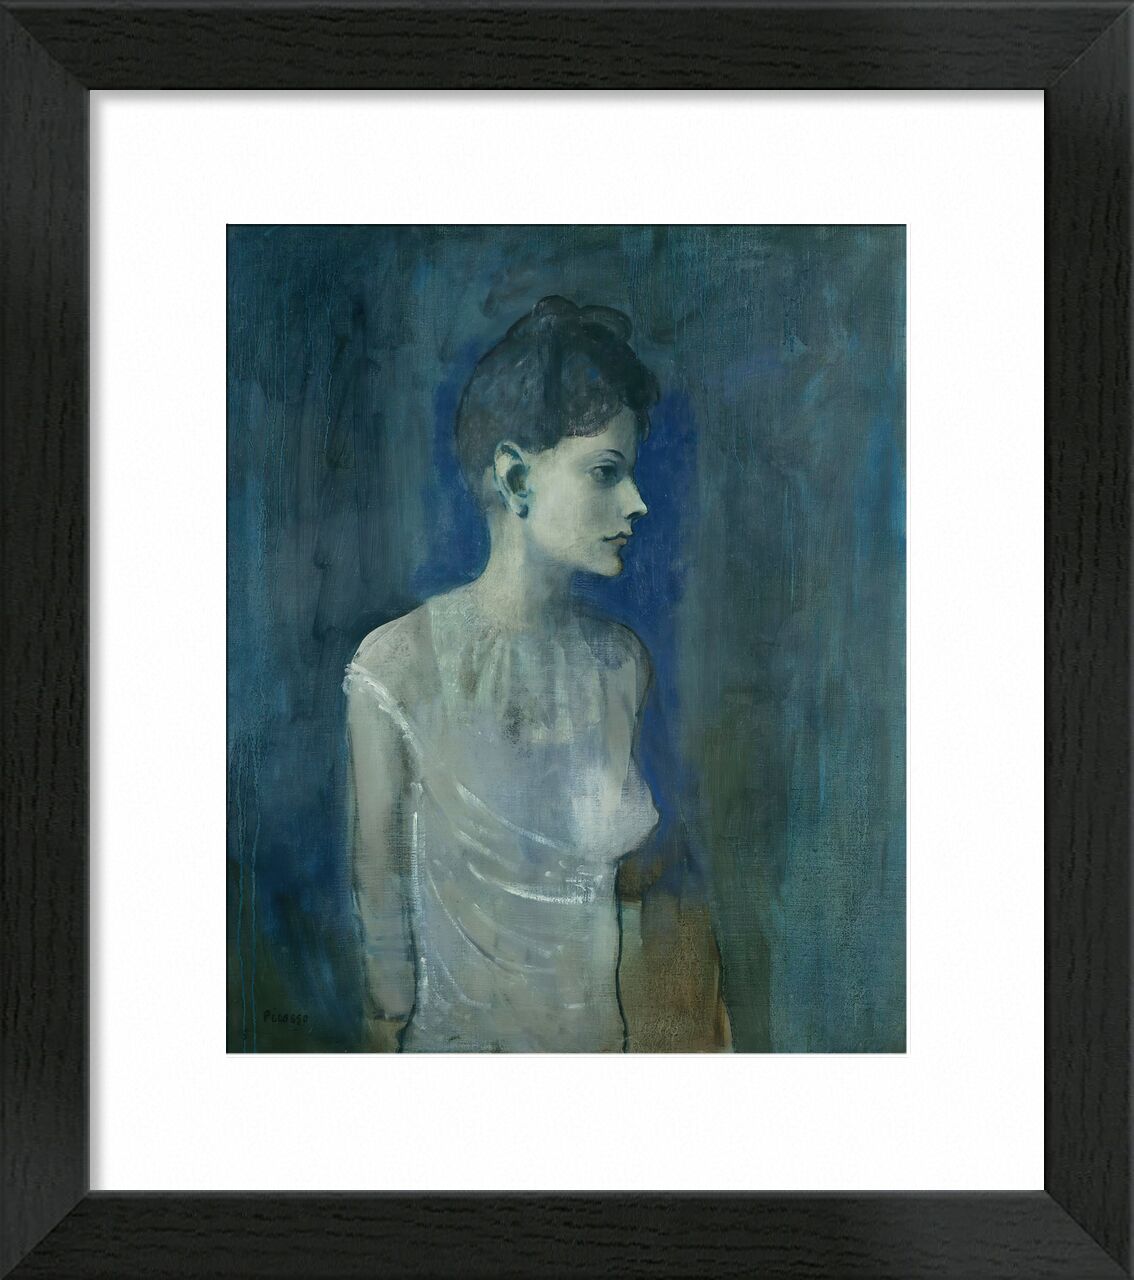 Girl in a Chemise - Picasso von Bildende Kunst, Prodi Art, nackt, nackt, Mädchen, Malerei, Picasso